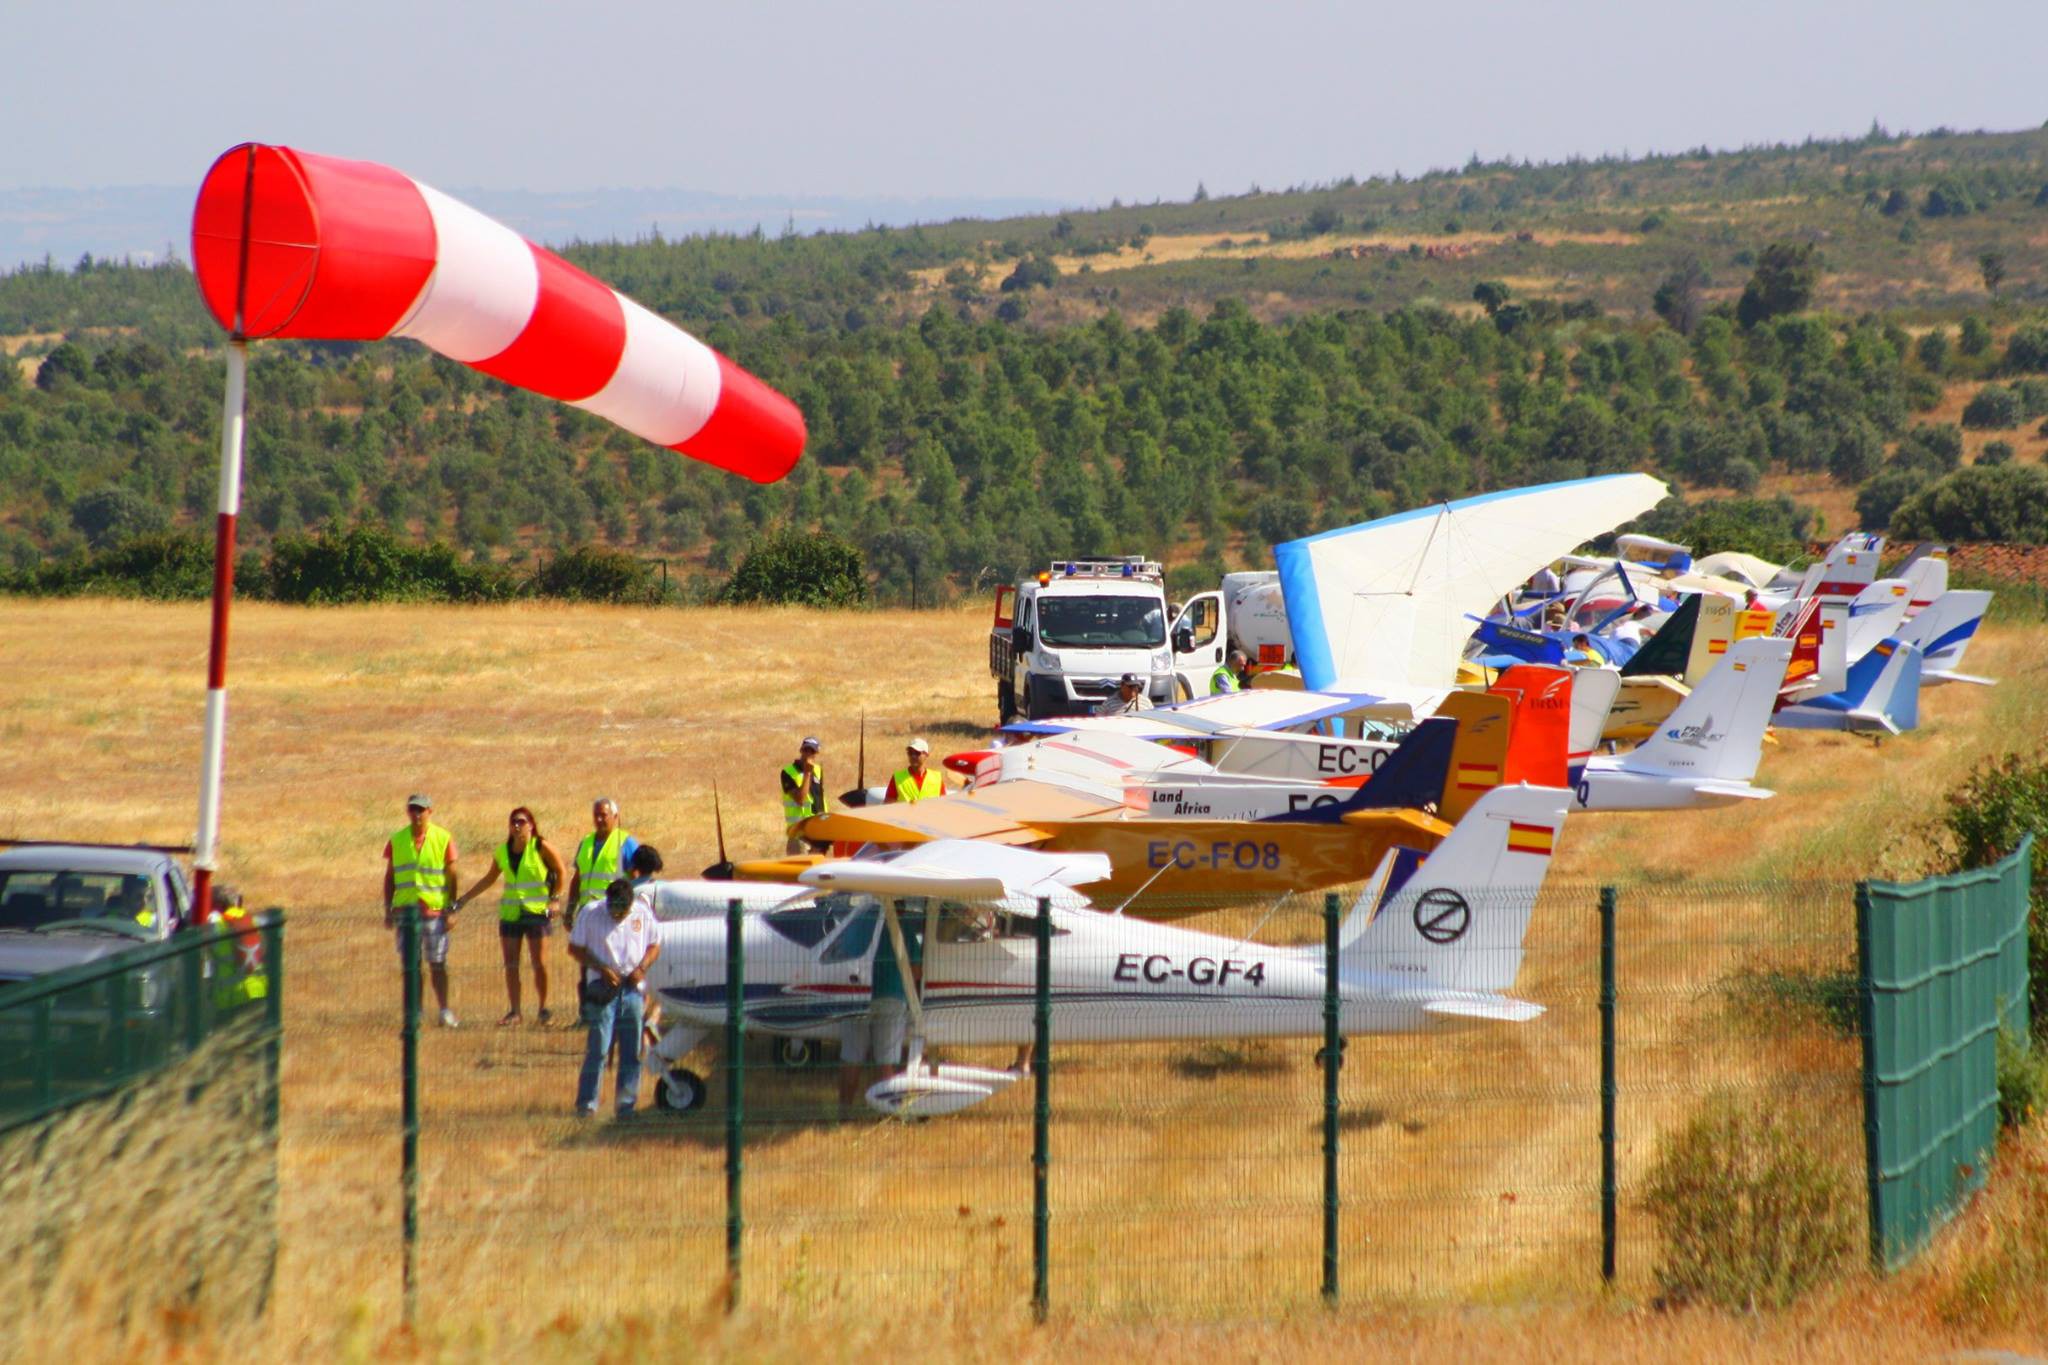 Mogadouro acolhe uma semana dedicada a atividades aeronáuticas de recreio